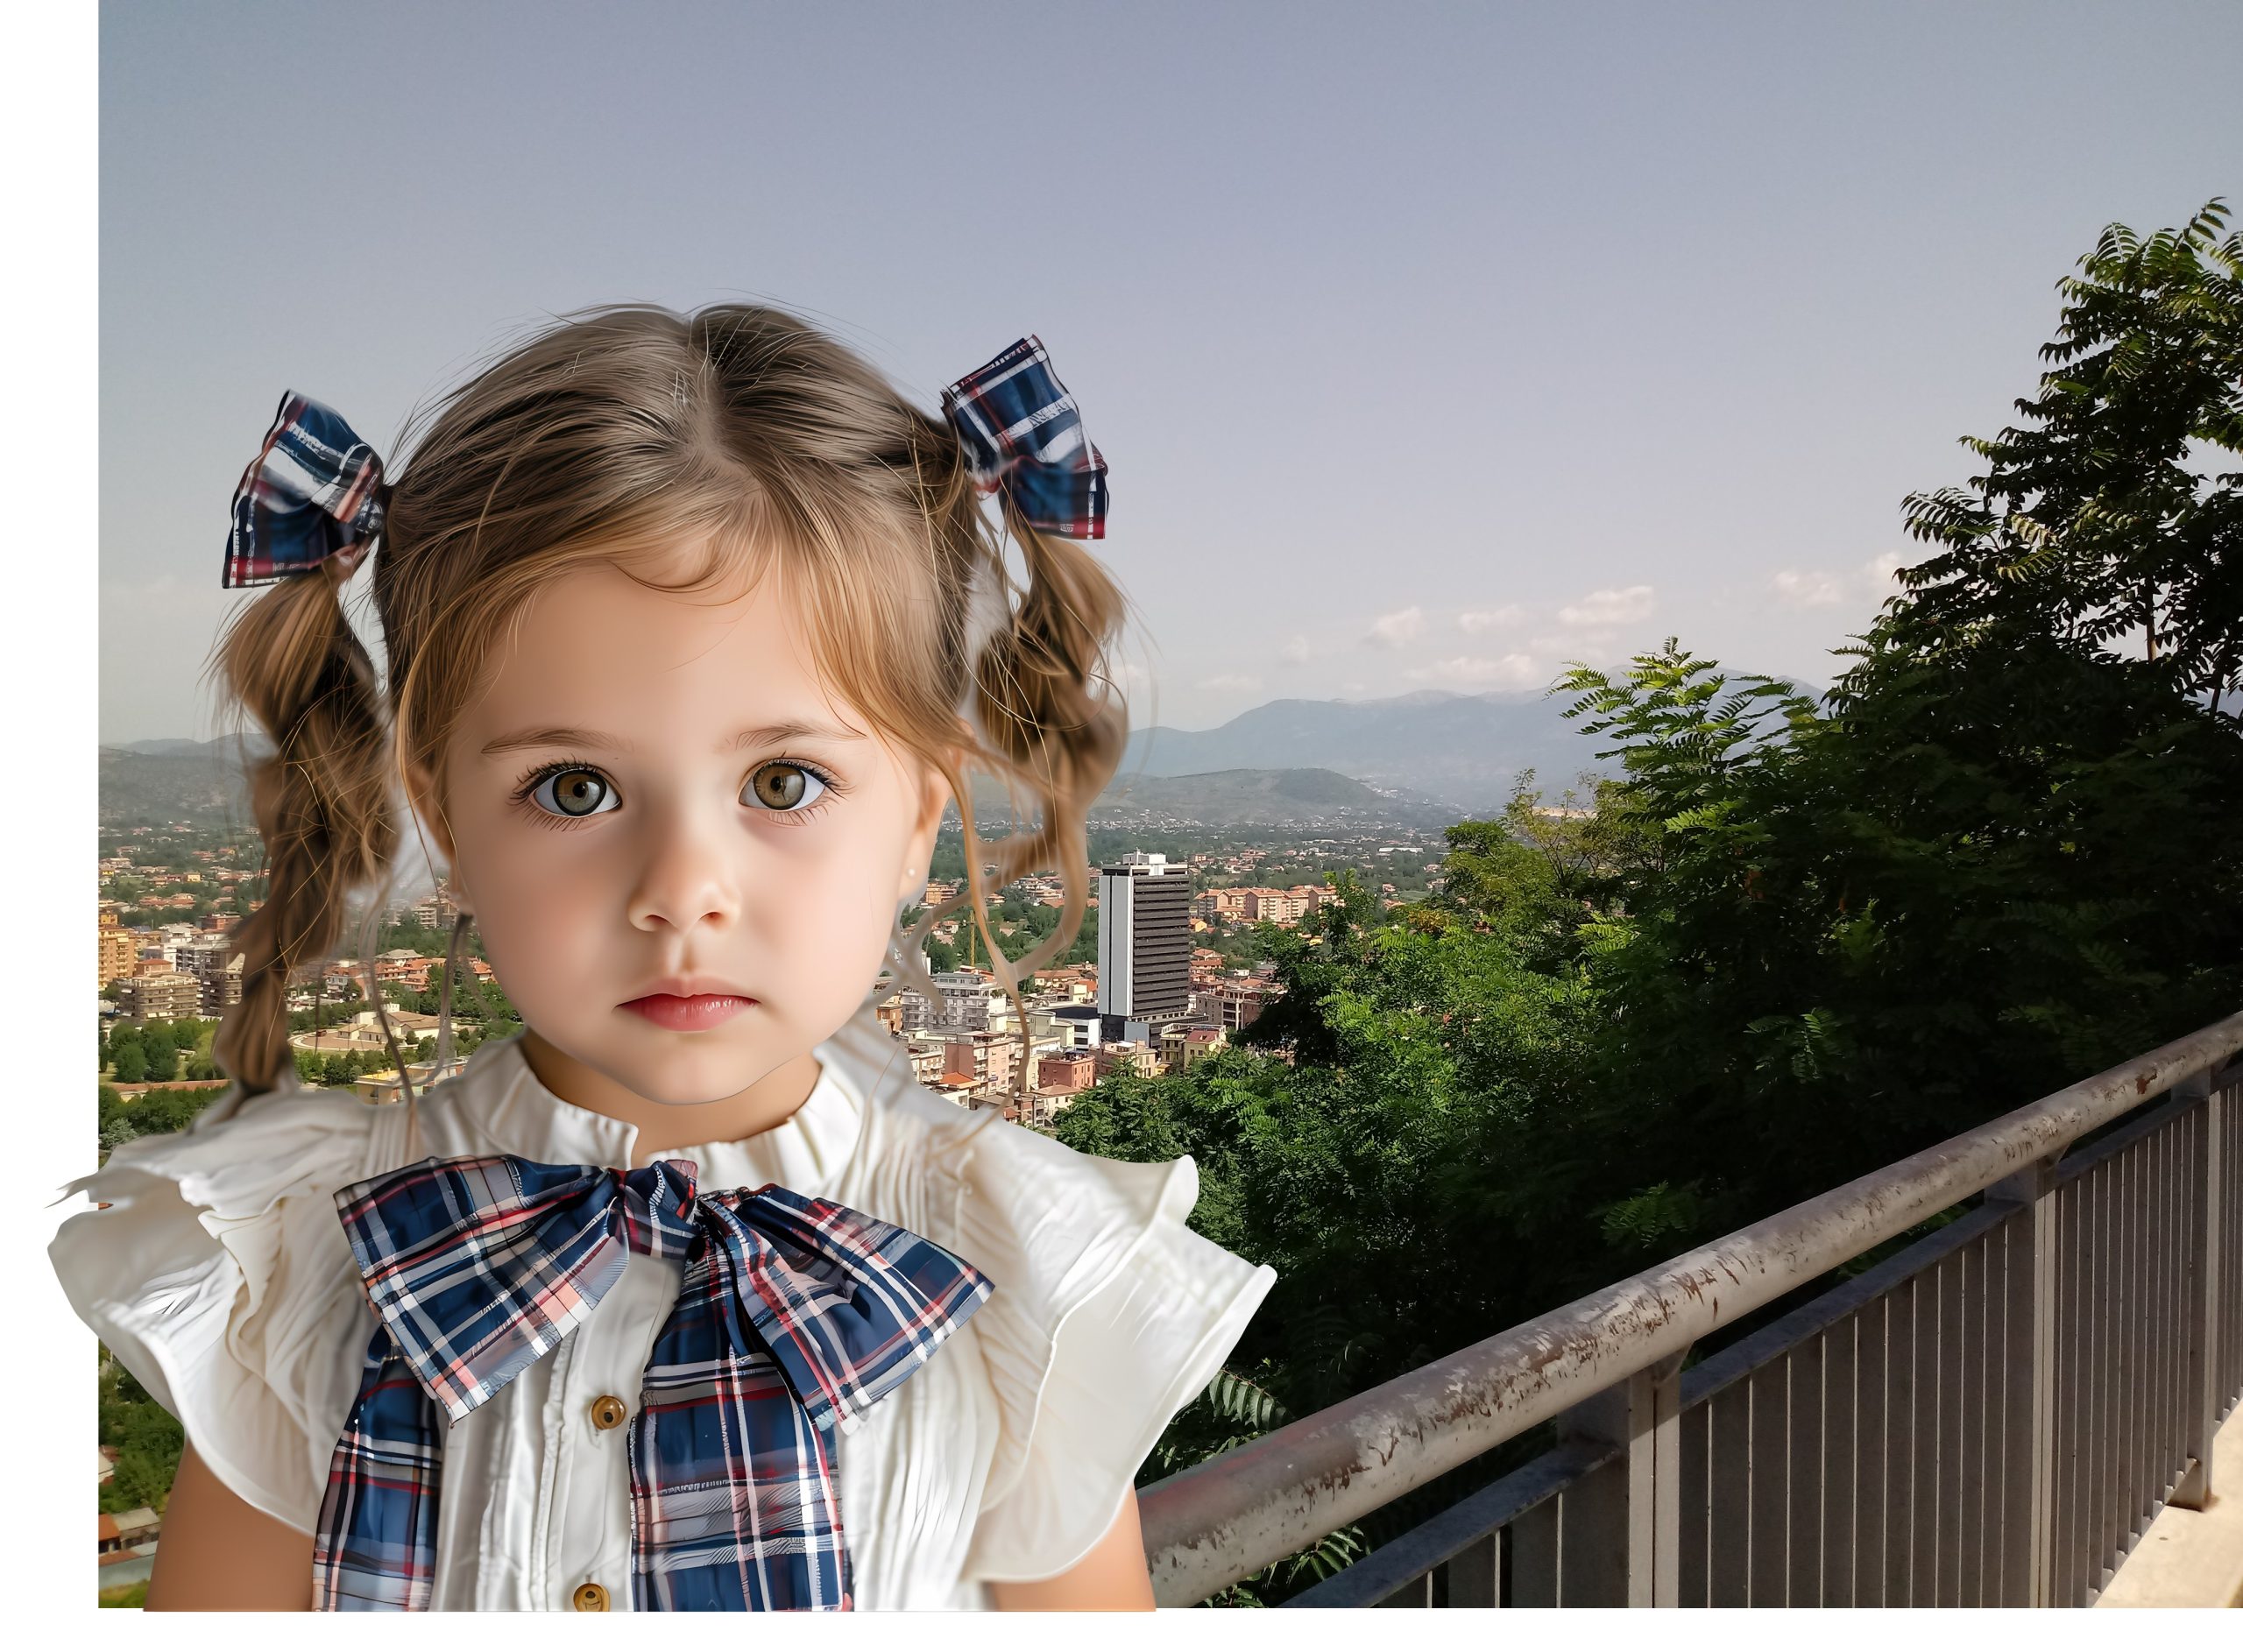 Anmeldungen für städtische Kindergärten in Frosinone – Kleines Mädchen auf dem Foto Ciociara